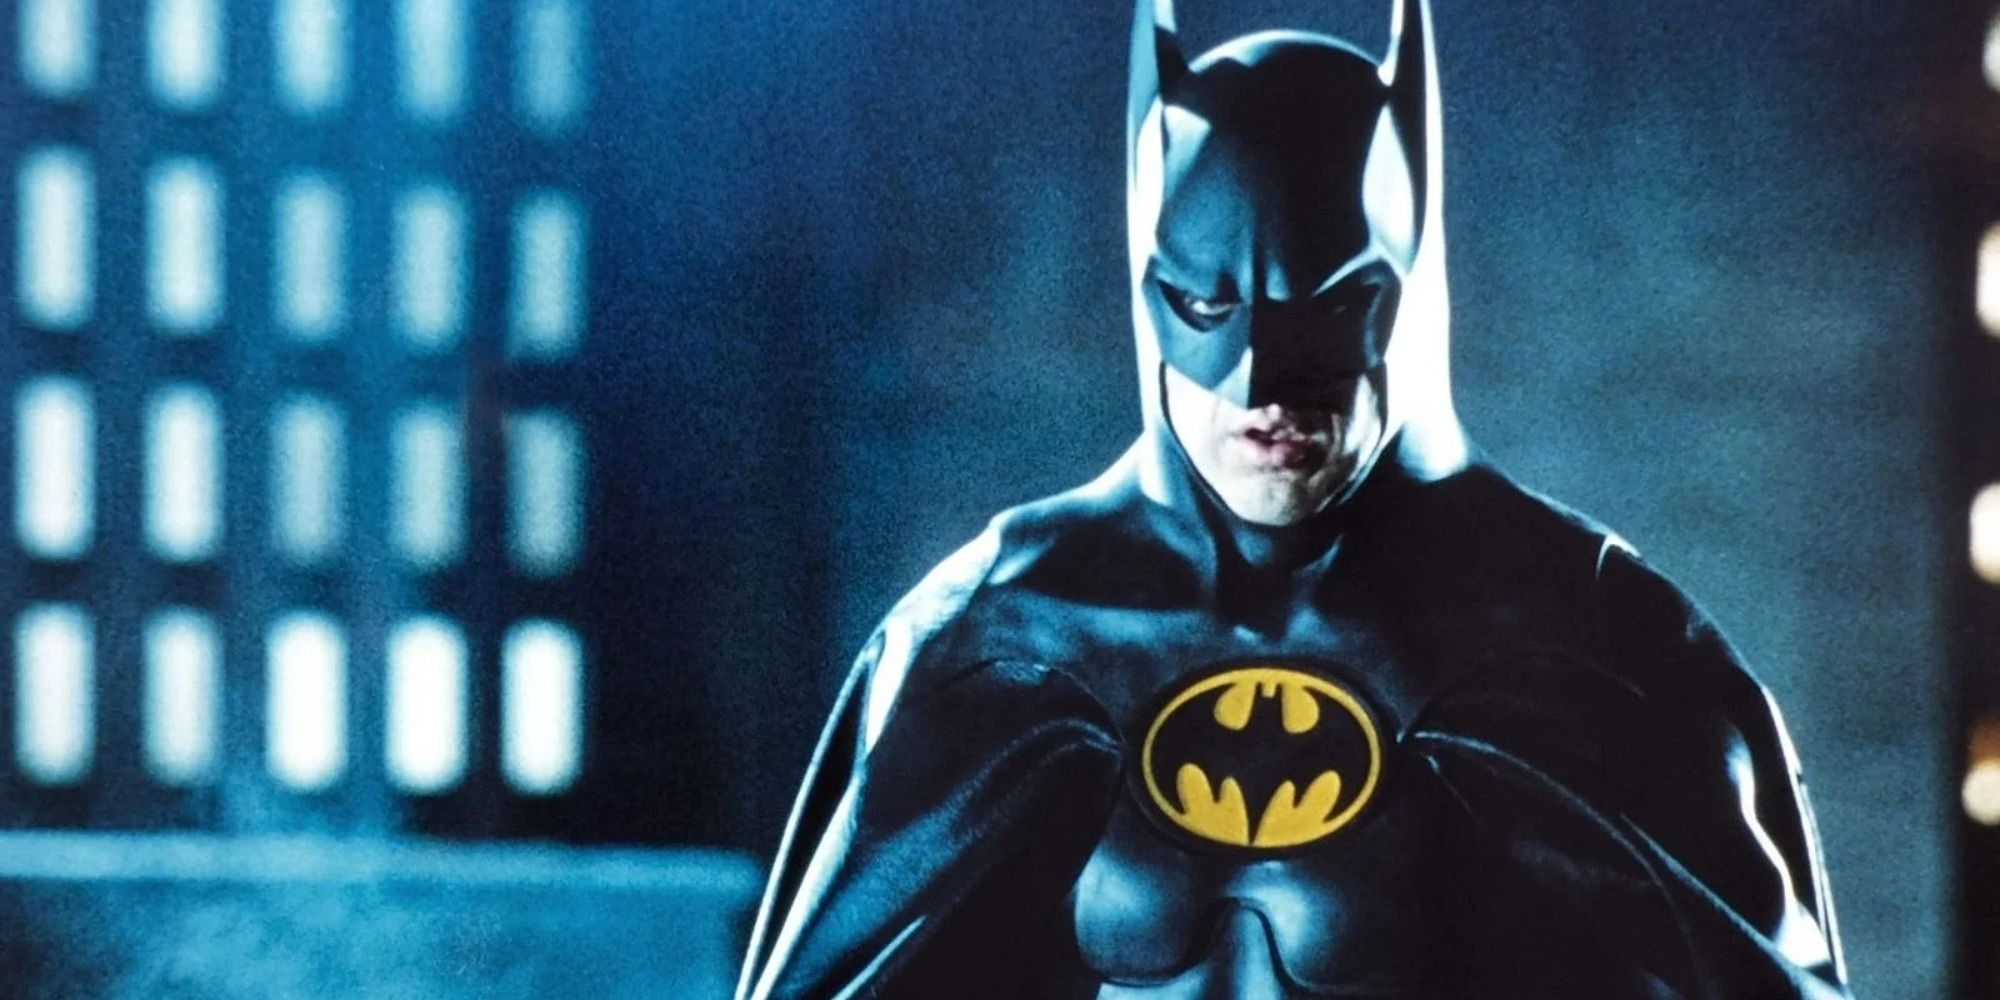 Michael Keaton as Batman at night 